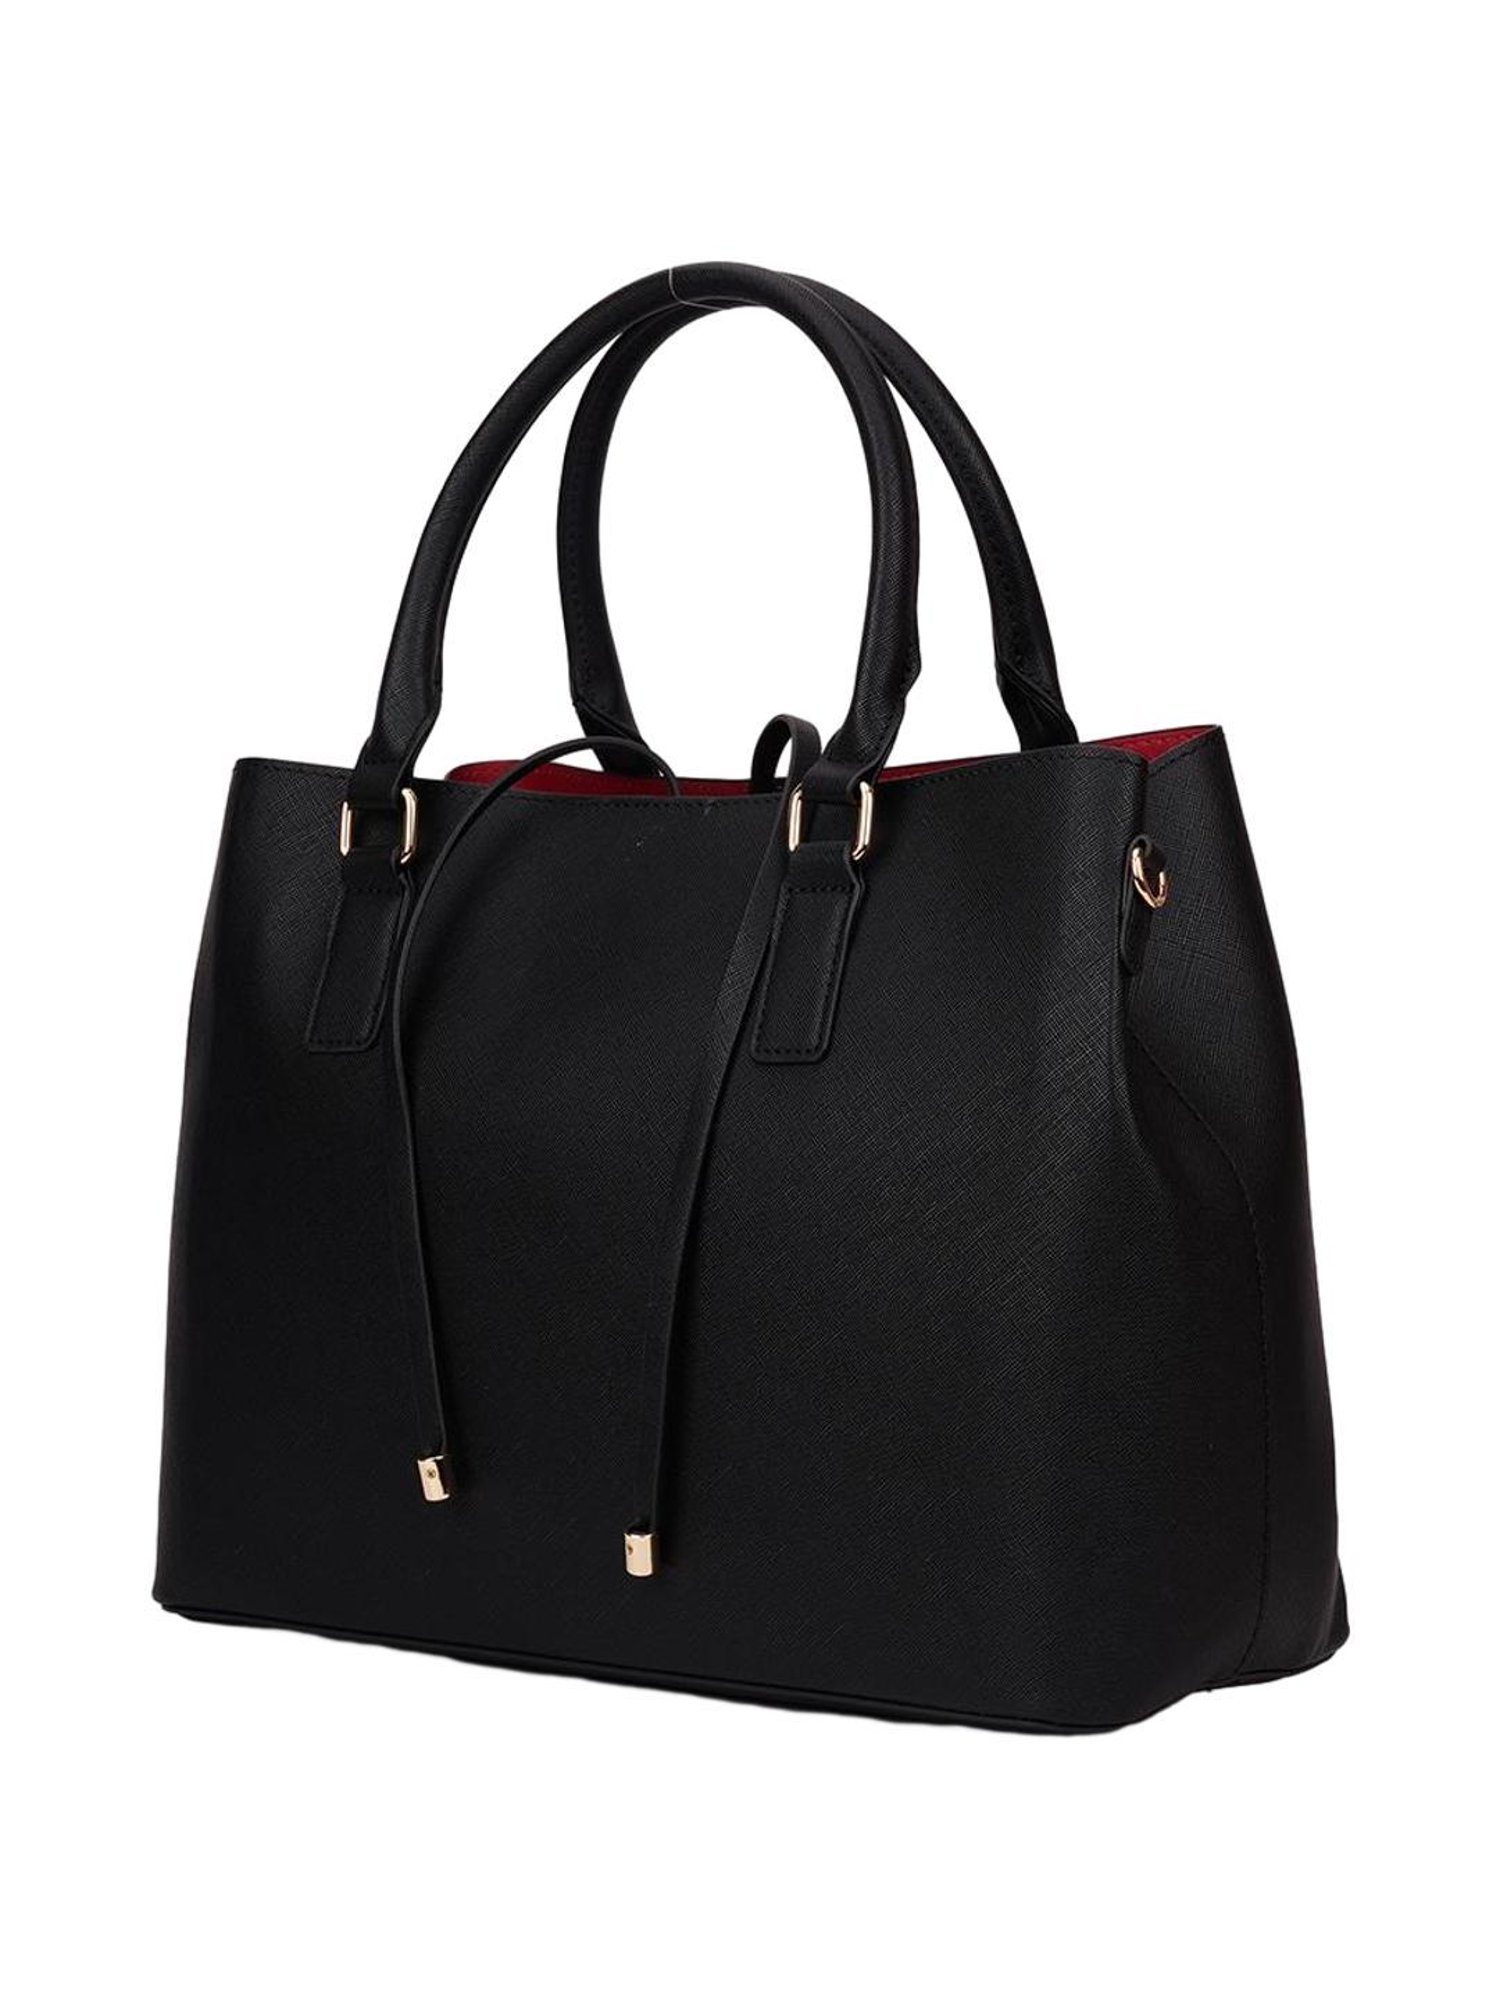 Buy ALDO Women Brown Hand-held Bag Tan Online @ Best Price in India |  Flipkart.com